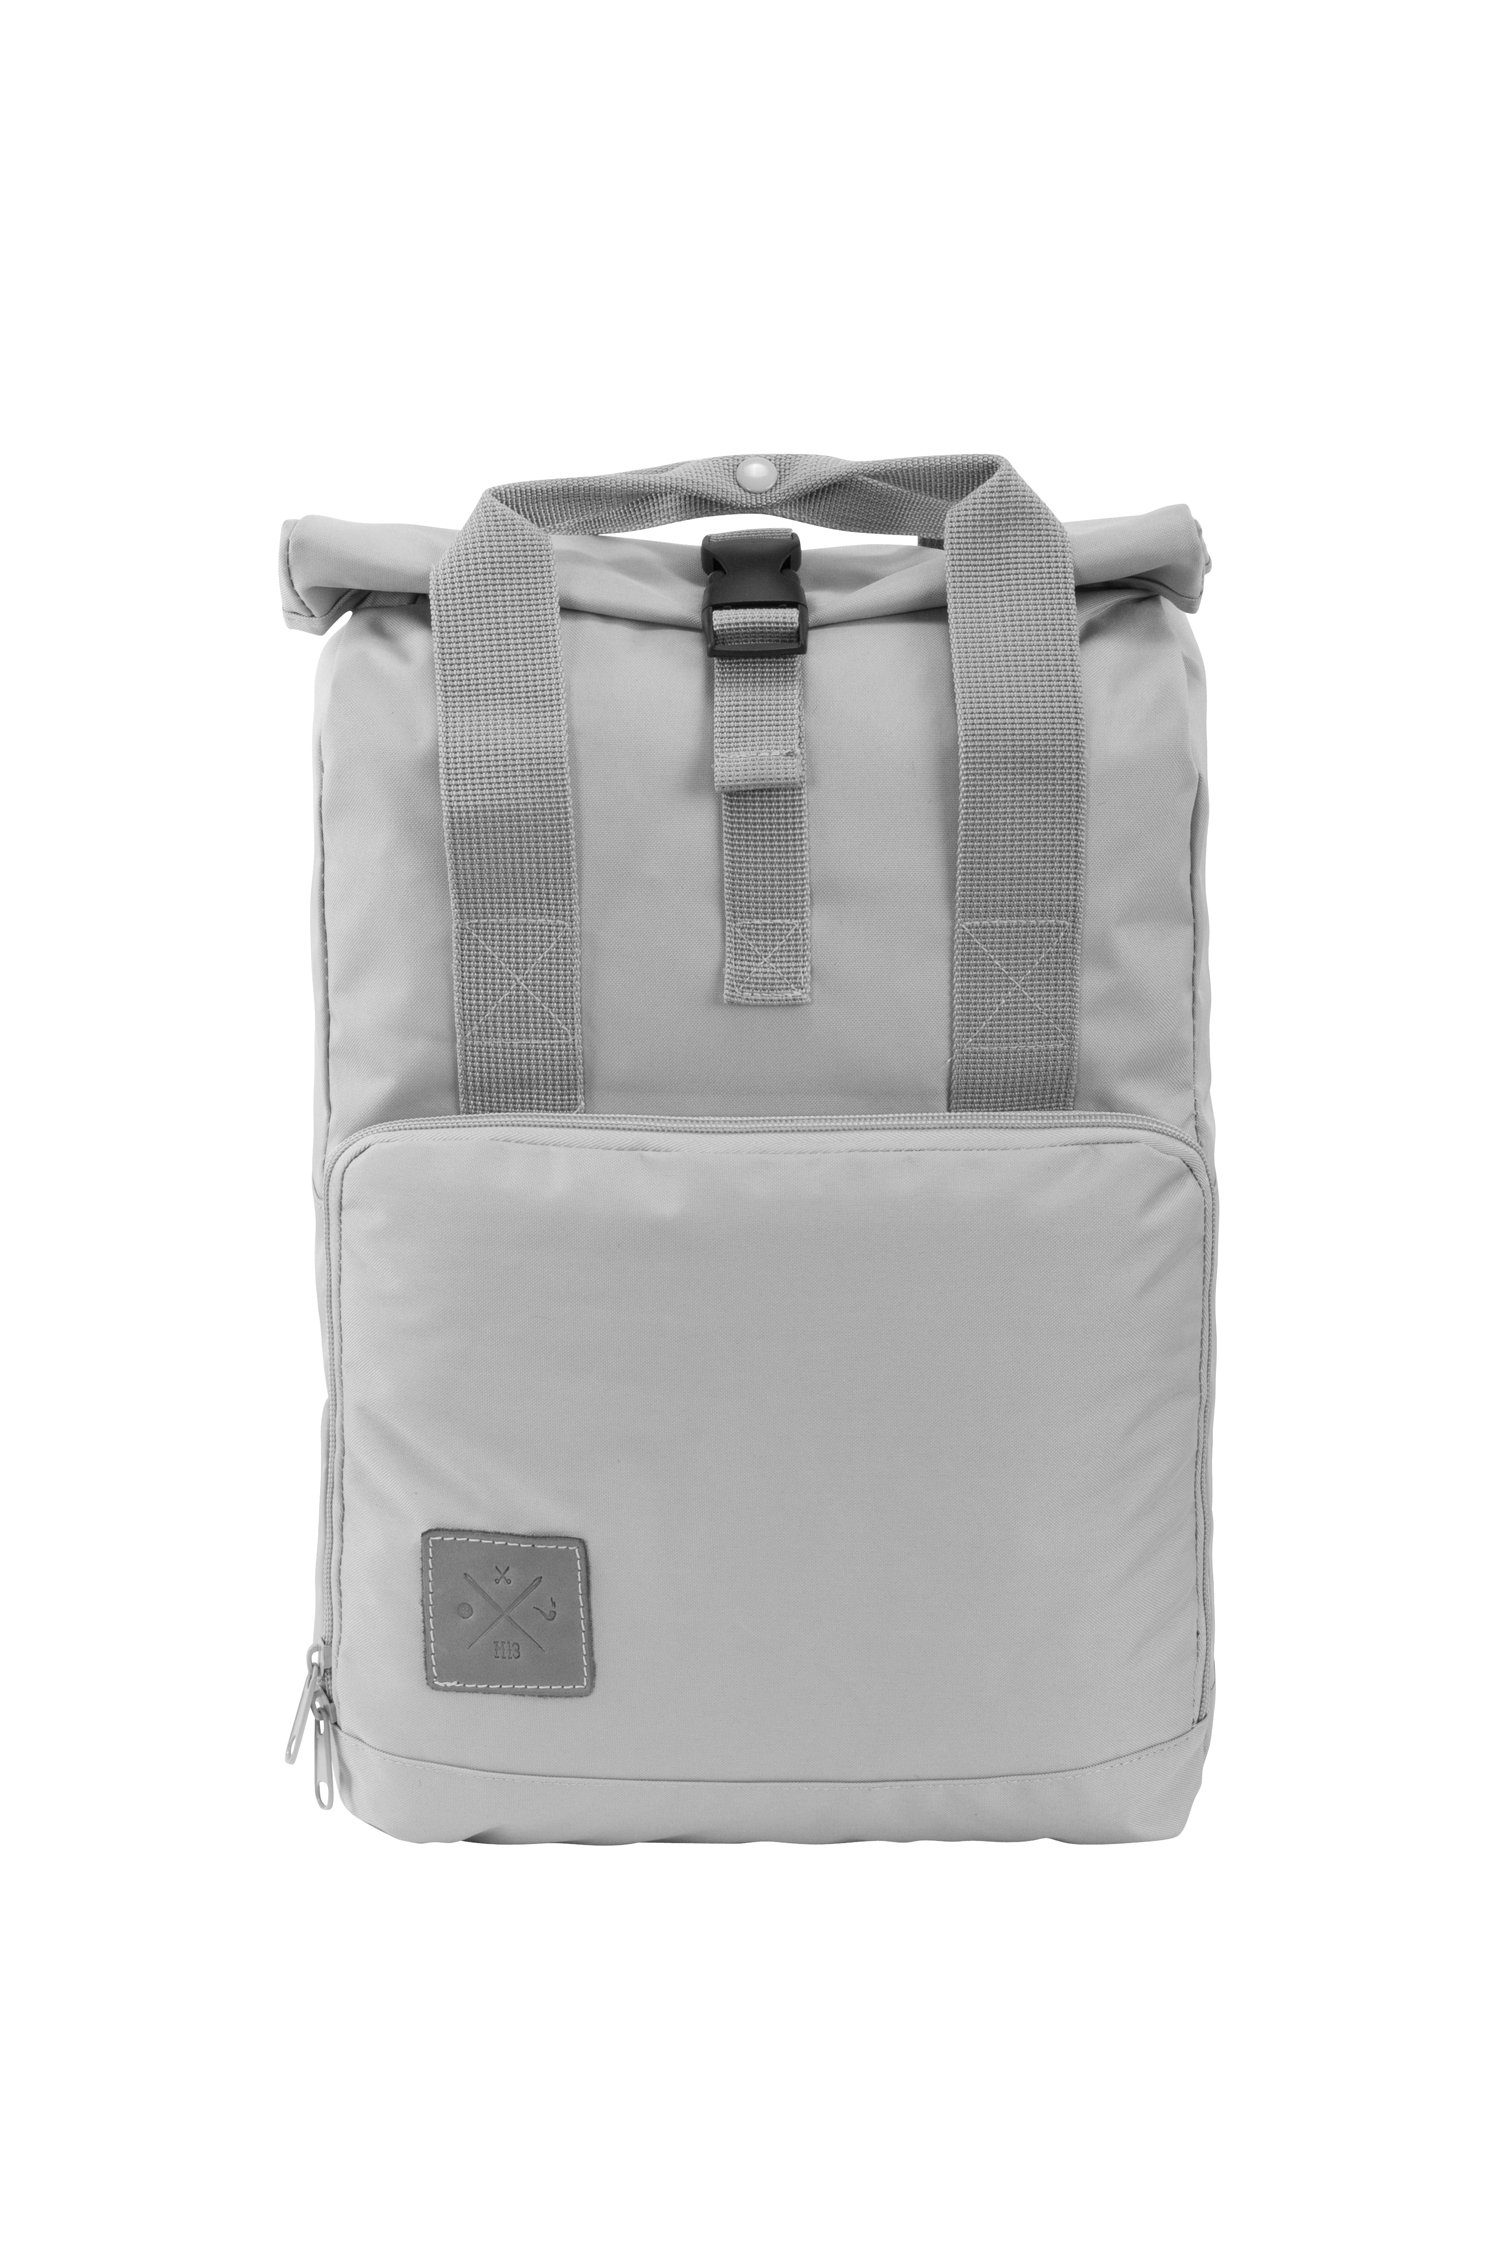 Manufaktur13 Tagesrucksack Roll-Top Daypack - Rucksack, mit Rollverschluss